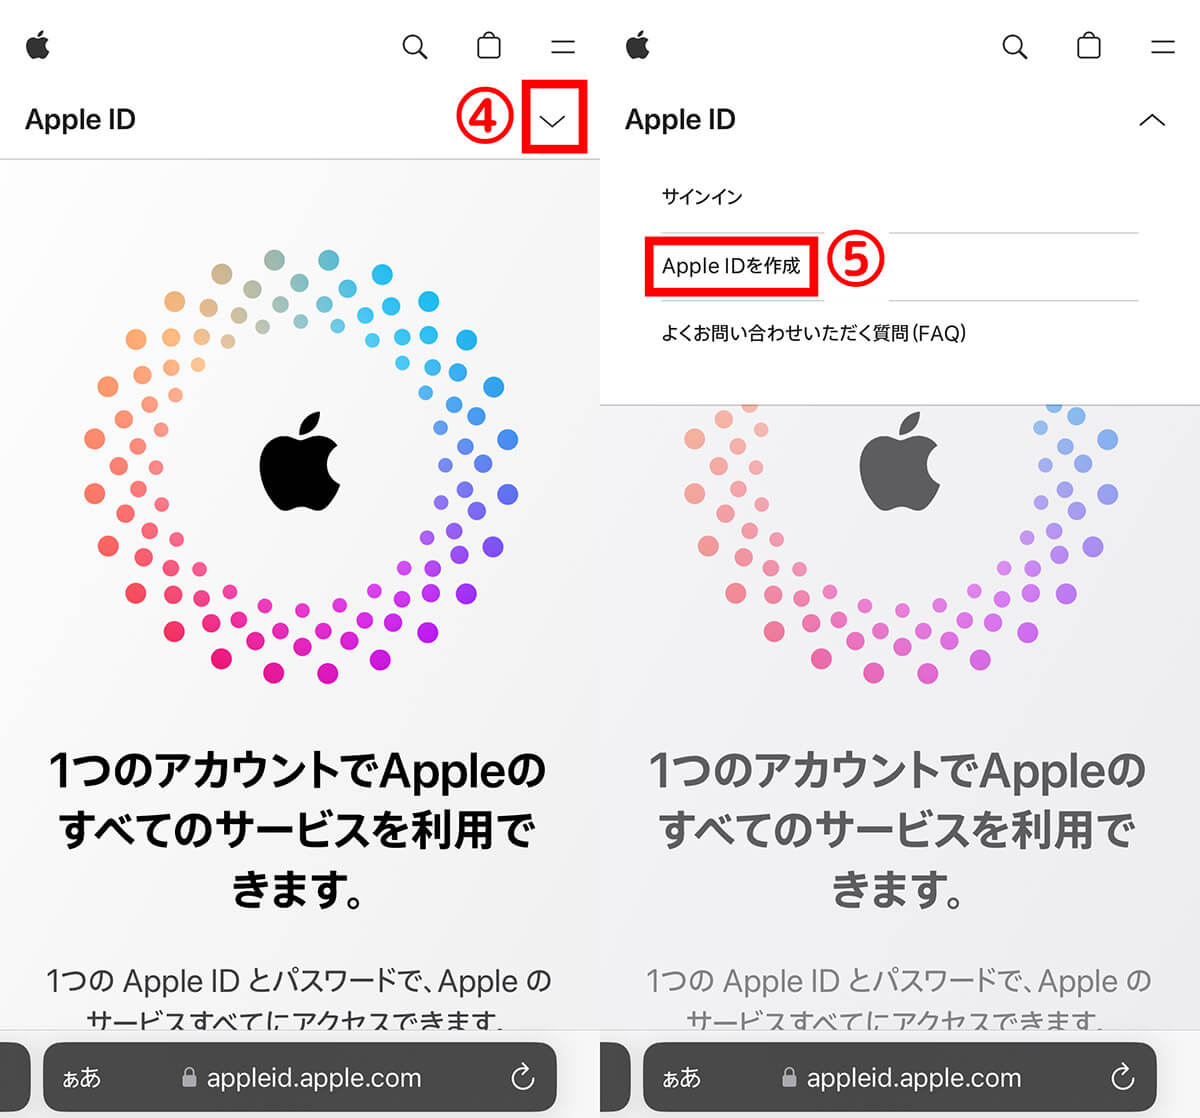 【方法②】Appleの公式サイトでApple IDを複数作成する場合2